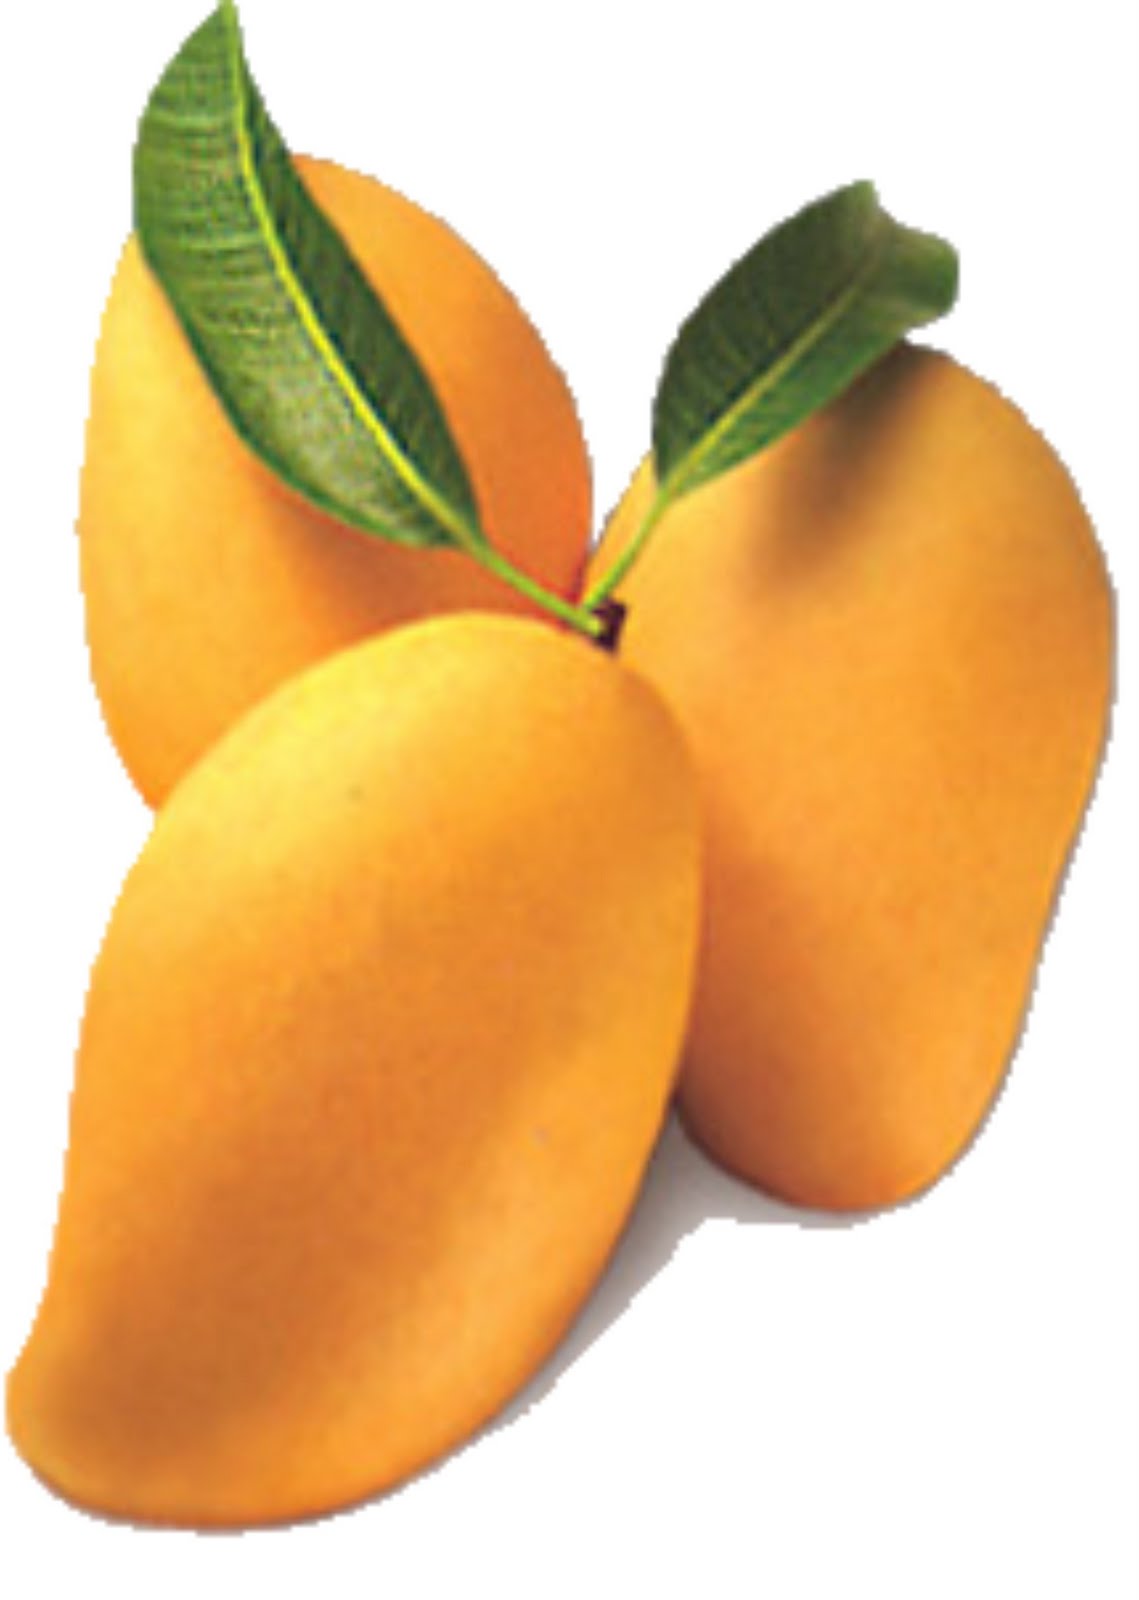 alphonso mangos